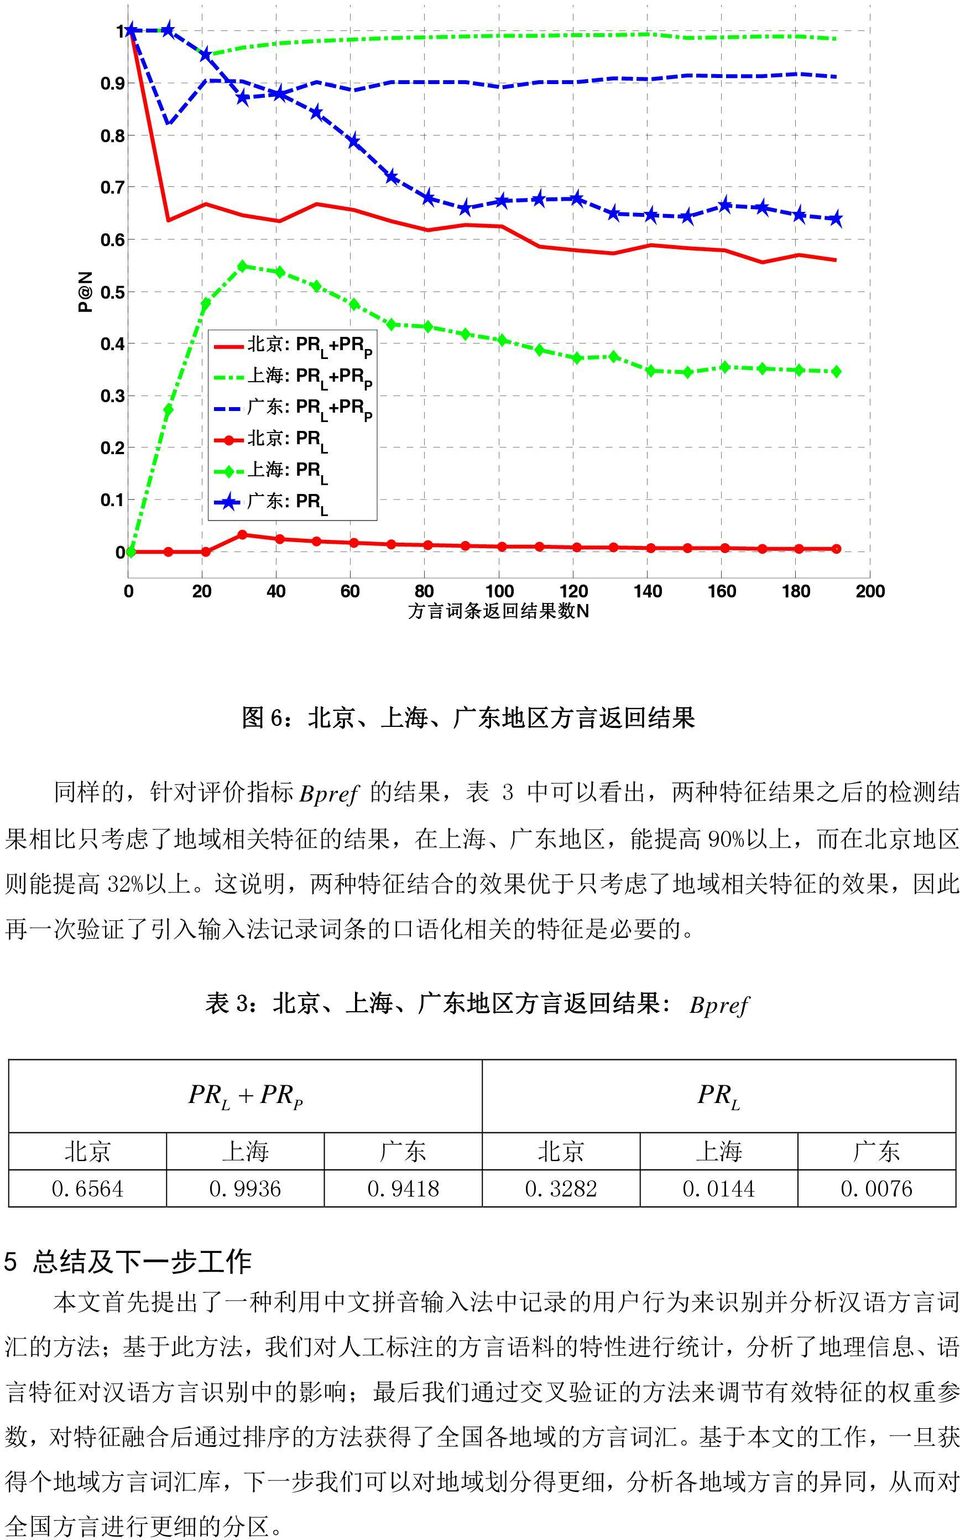 果 相 比 只 考 虑 了 地 域 相 关 特 征 的 结 果, 在 上 海 广 东 地 区, 能 提 高 9% 以 上, 而 在 北 京 地 区 则 能 提 高 32% 以 上 这 说 明, 两 种 特 征 结 合 的 效 果 优 于 只 考 虑 了 地 域 相 关 特 征 的 效 果, 因 此 再 一 次 验 证 了 引 入 输 入 法 记 录 词 条 的 口 语 化 相 关 的 特 征 是